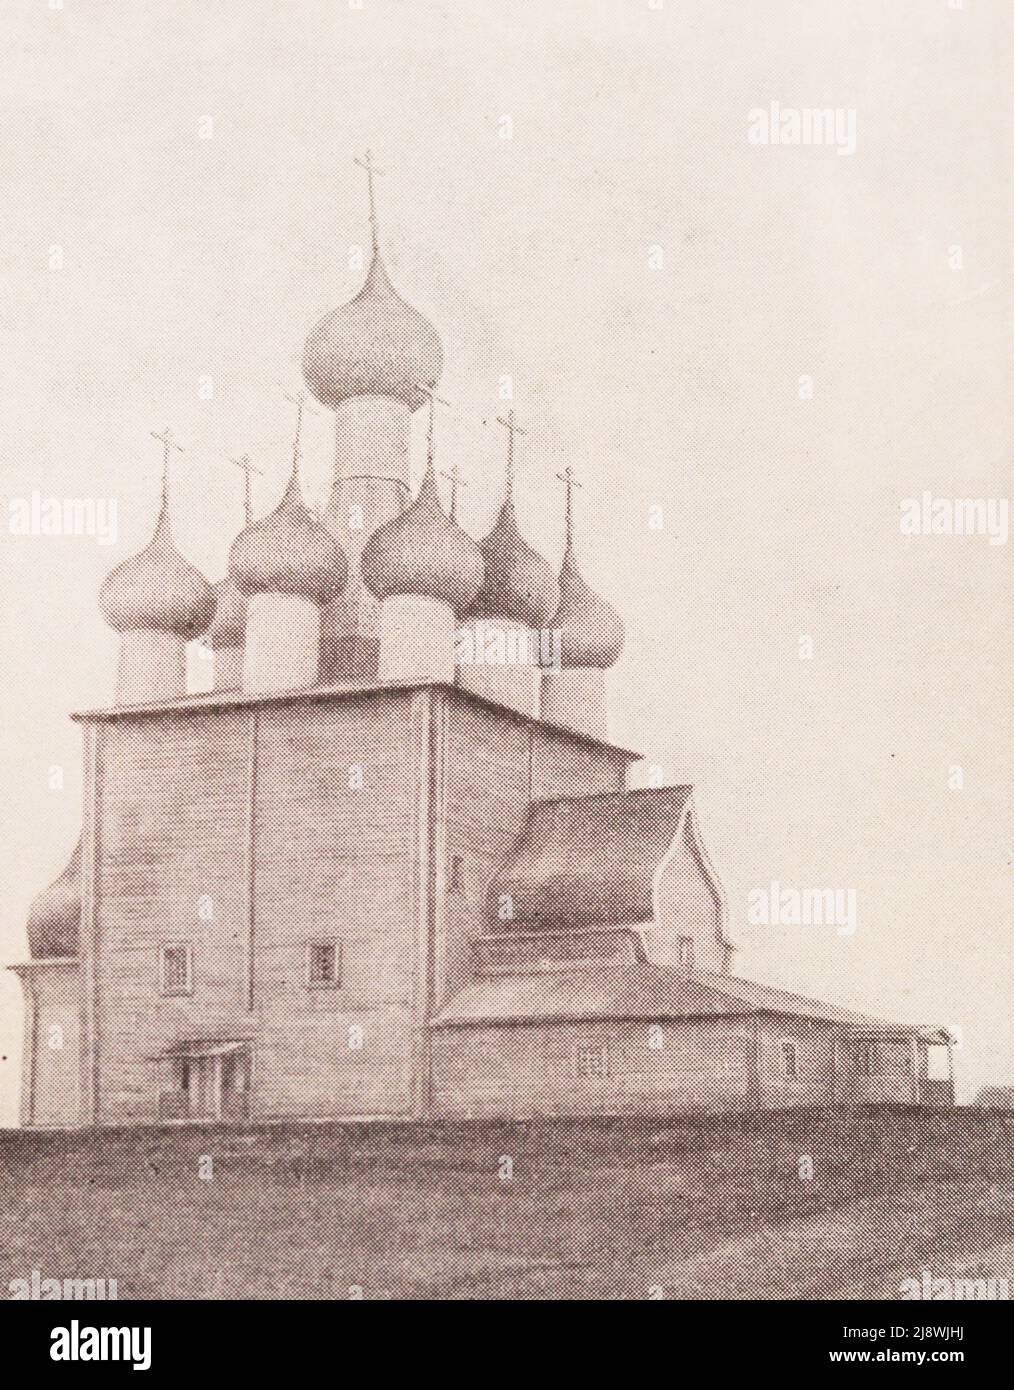 Die Elias-Kirche im Dorf Tschuchtschurma in der Region Archangelsk wurde 1657 erbaut. Foto aus dem 19.. Jahrhundert. Stockfoto